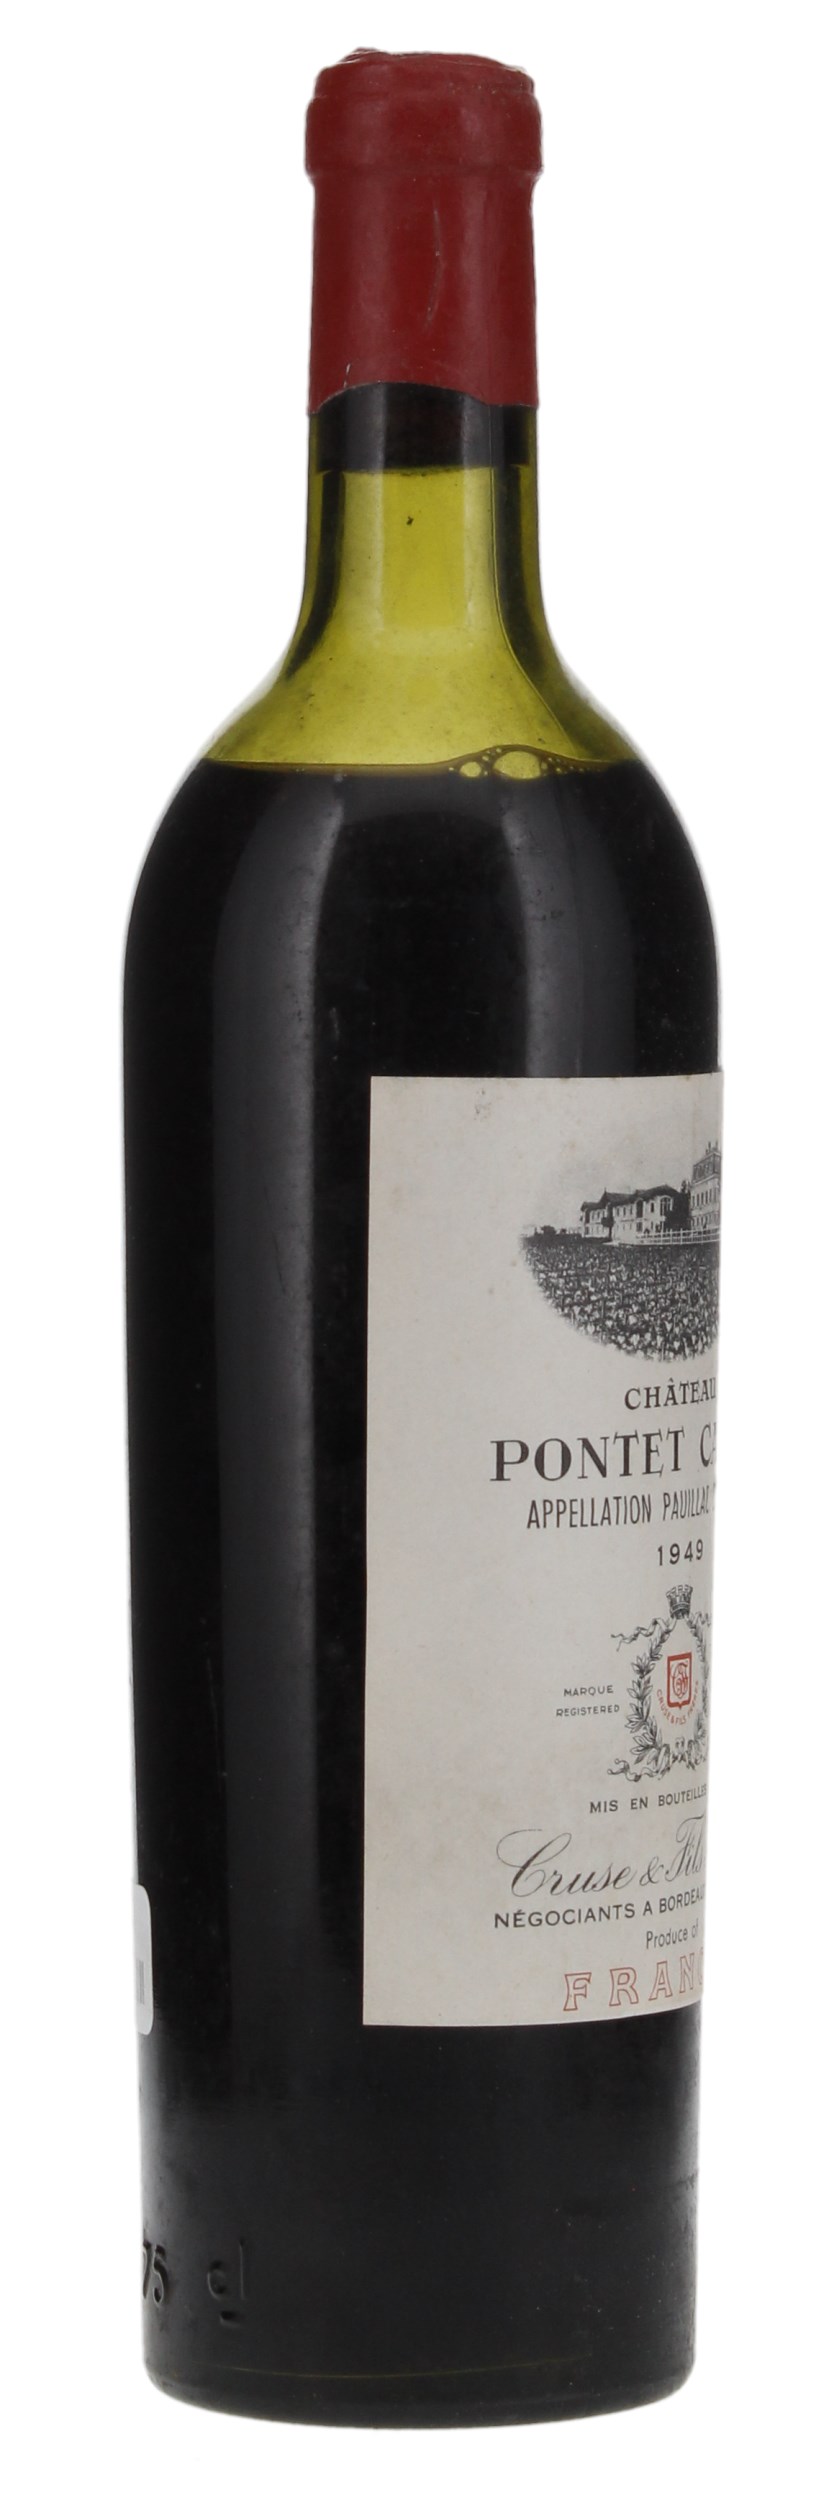 1949 Château Pontet-Canet, 750ml